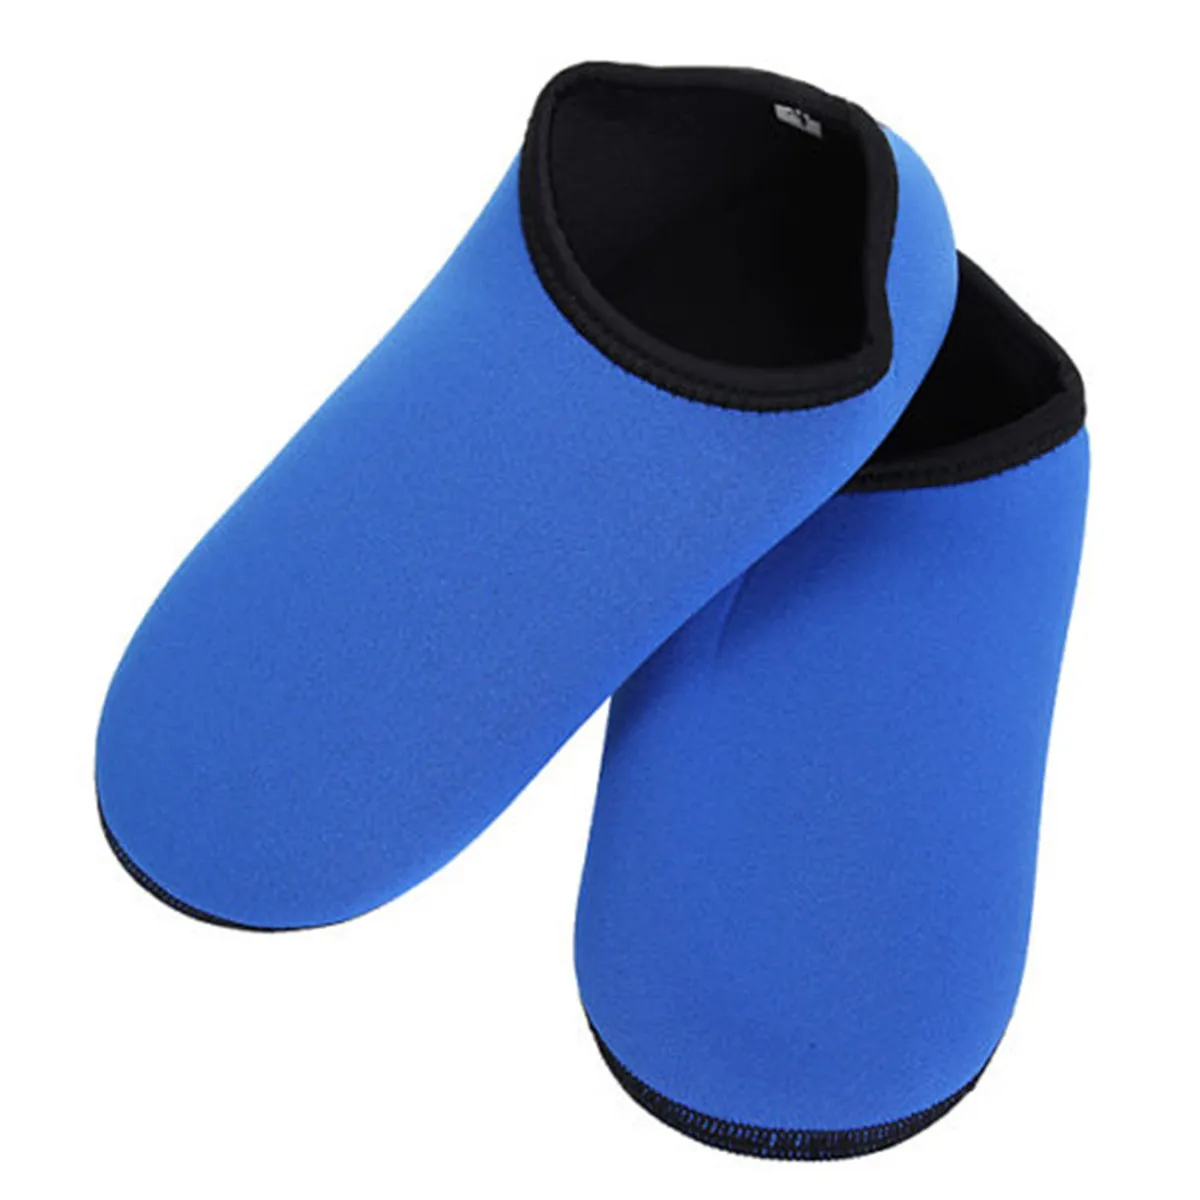 BSAID неопреновые Бахилы для дайвинга, эластичные носки для серфинга с аквалангом, плавания, воды, спортивные носки для бега по песку, теплые носки для мокрой стопы, размер S-2XL 2,5 мм - Цвет: Синий